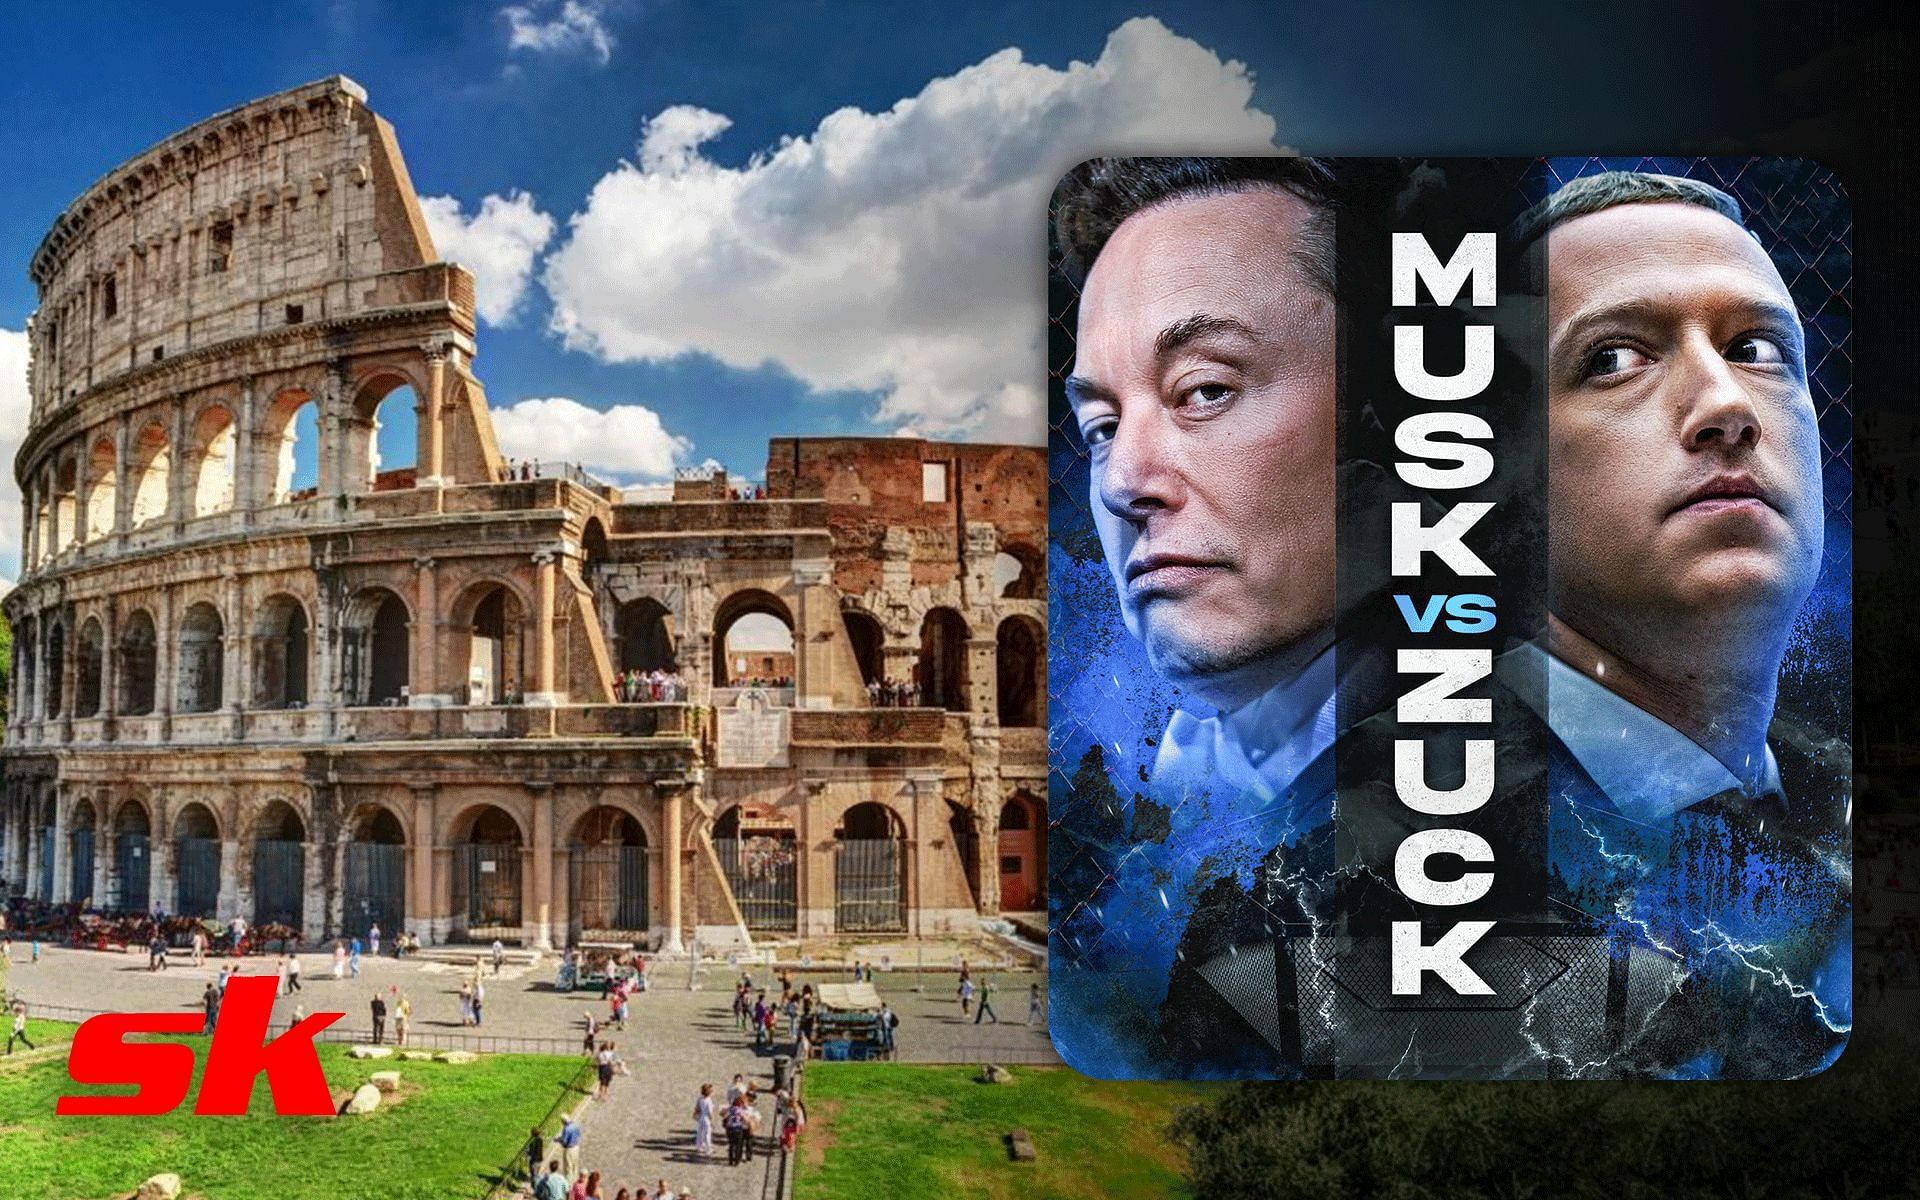 L’Italia rifiuta l’offerta del Colosseo a Elon Musk contro Mark Zuckerberg, ma accetta una condizione